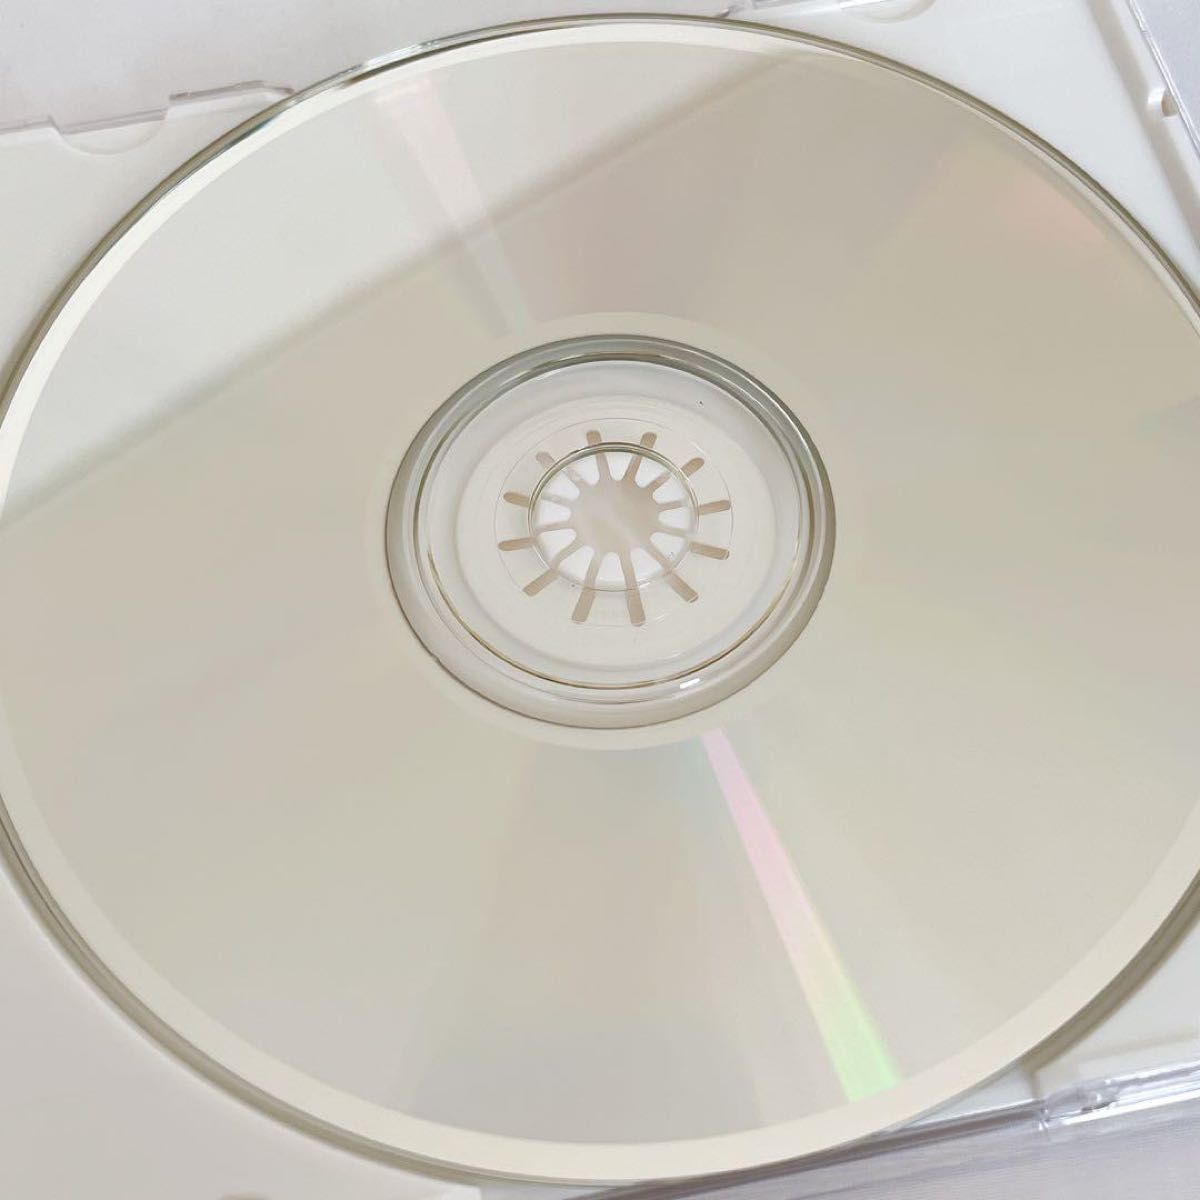 斉藤由貴 PANT 通算5枚目のフル・アルバム CD